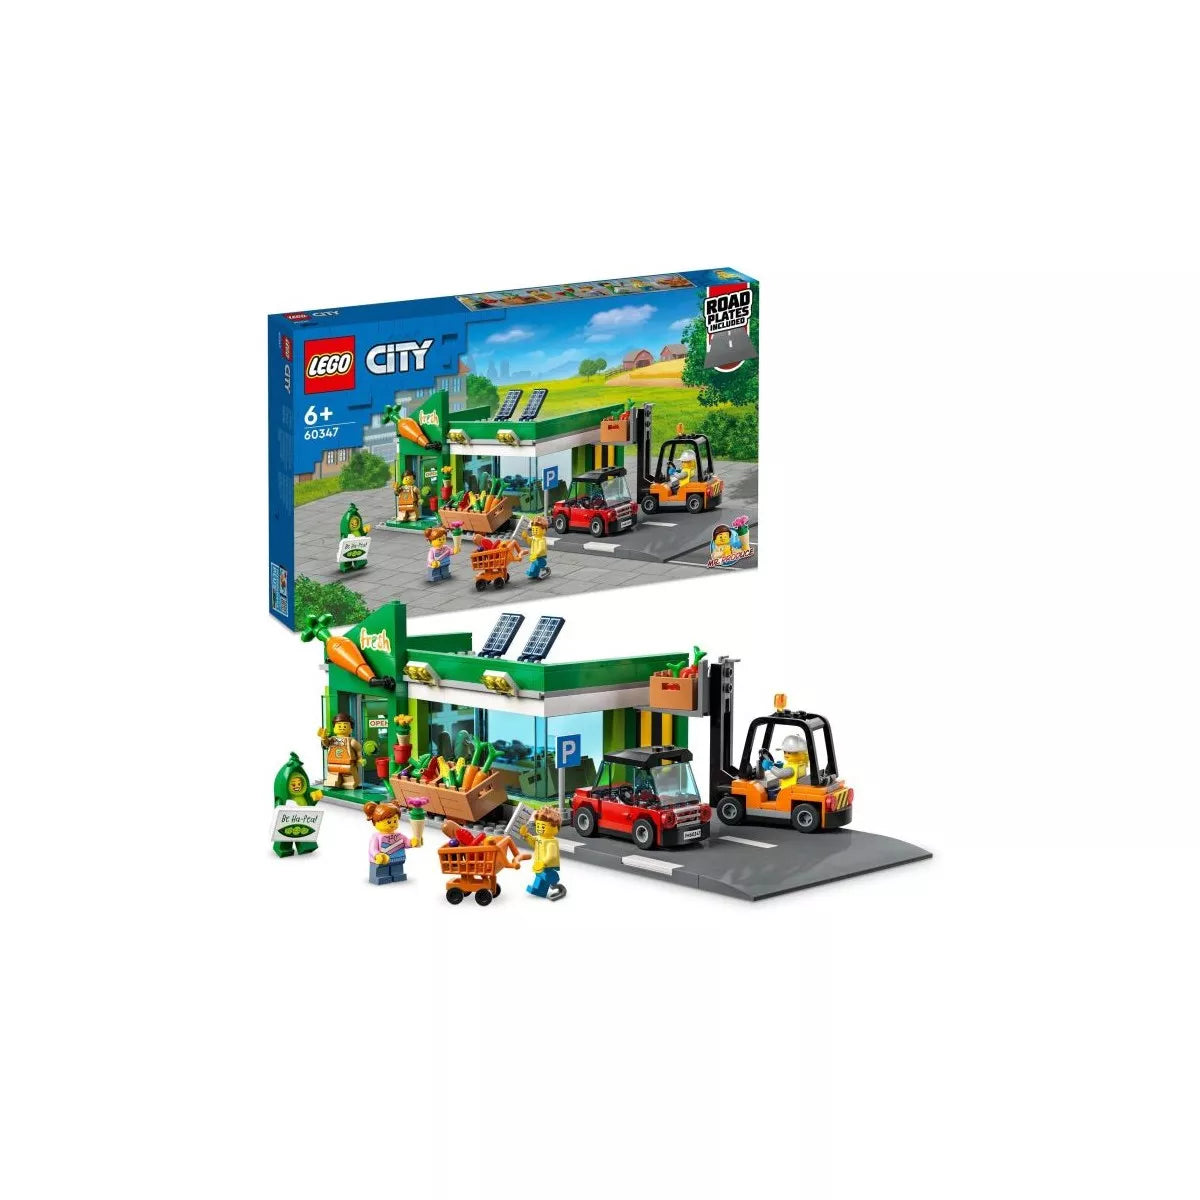 Lego City 60347 - Supermarkt Vanellas Spielewelt